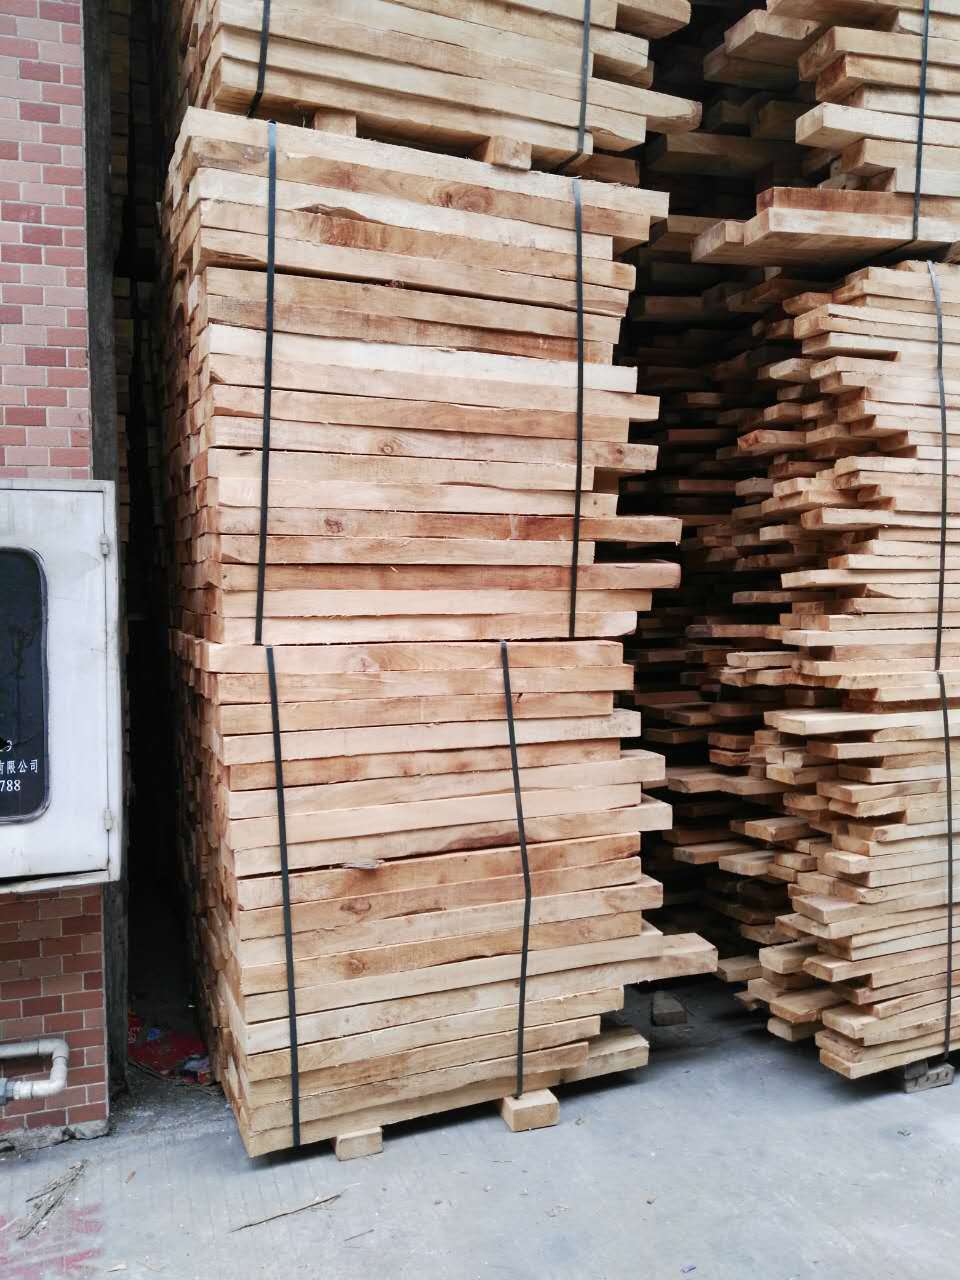 供应西安橡胶木自然板批发价格，西安橡胶木自然板批发，西安橡胶木自然板厂家报价，西安橡胶木自然板批发价格